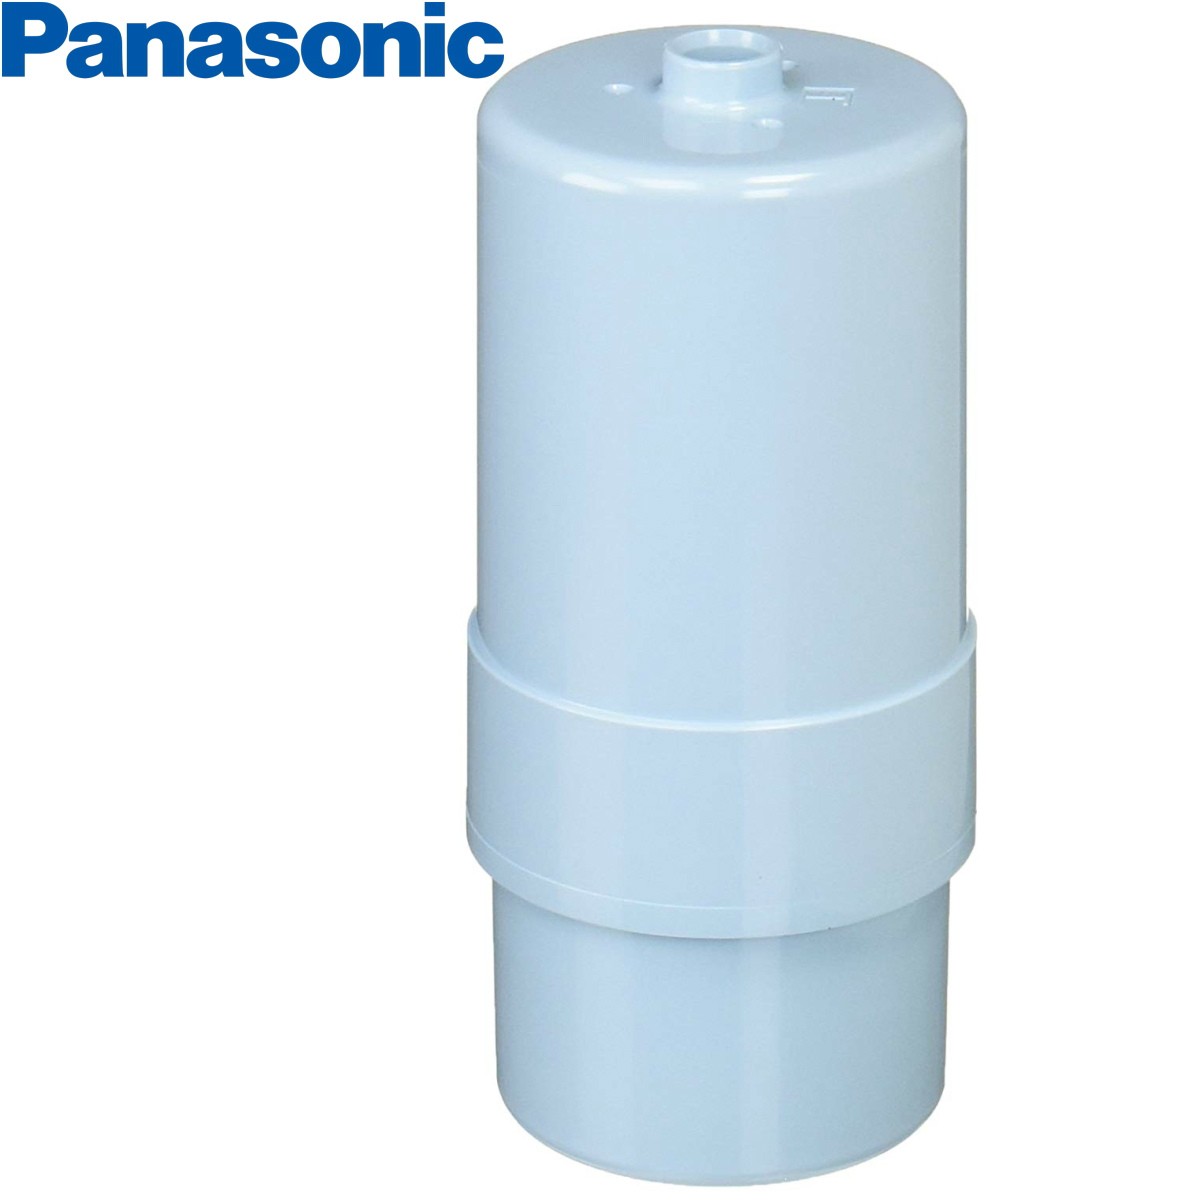 Panasonic パナソニック アルカリ整水器・浄水器 交換用カートリッジ TK-AS30C1 4549980047798